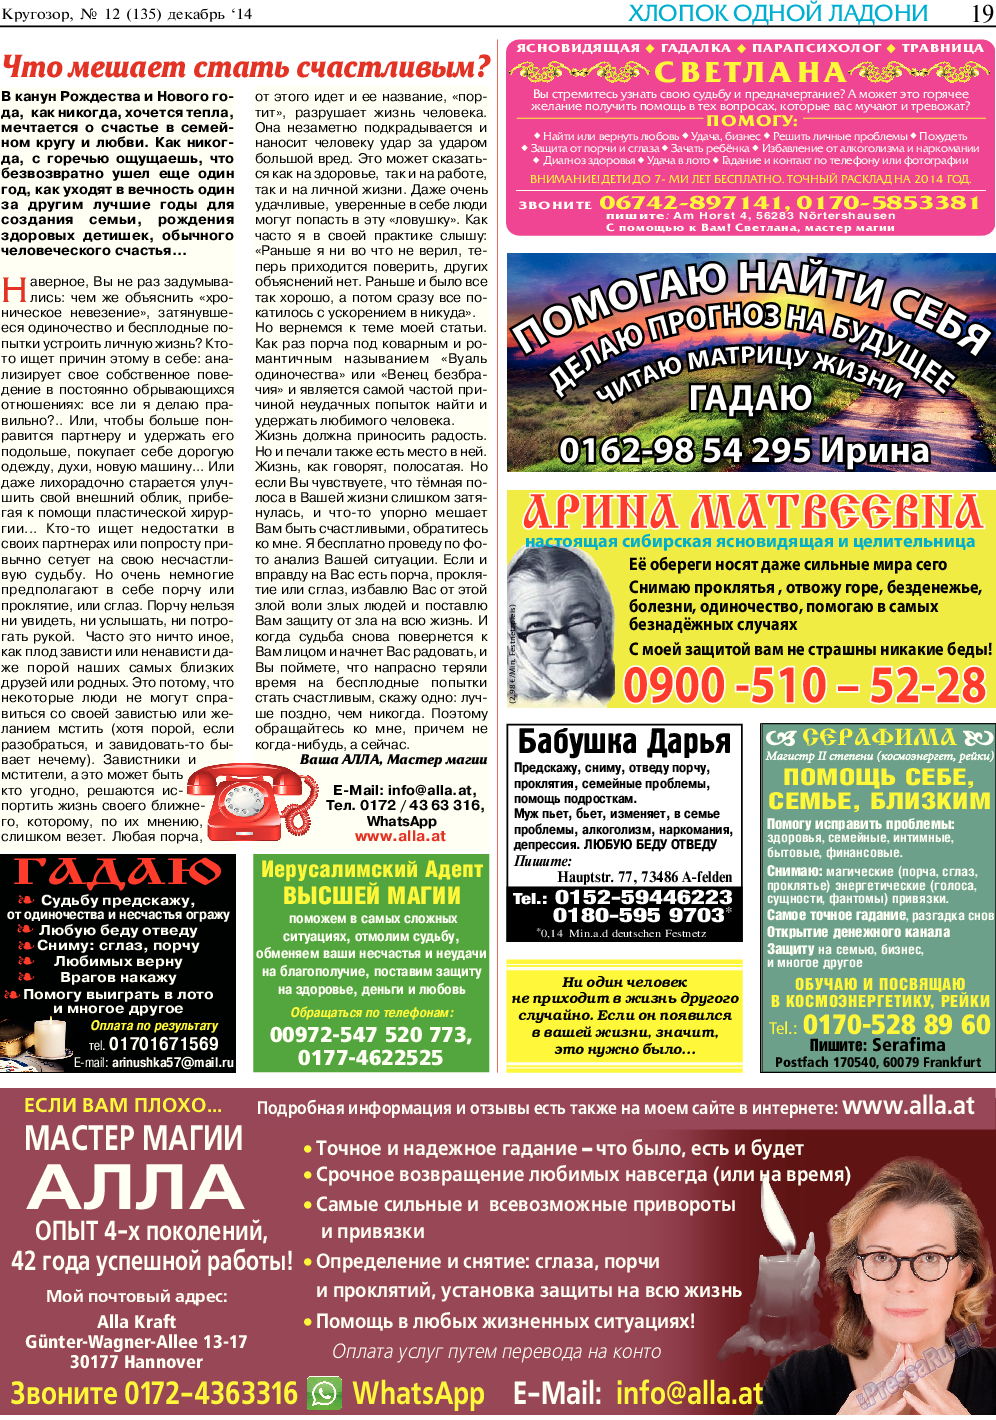 Кругозор, газета. 2014 №12 стр.19